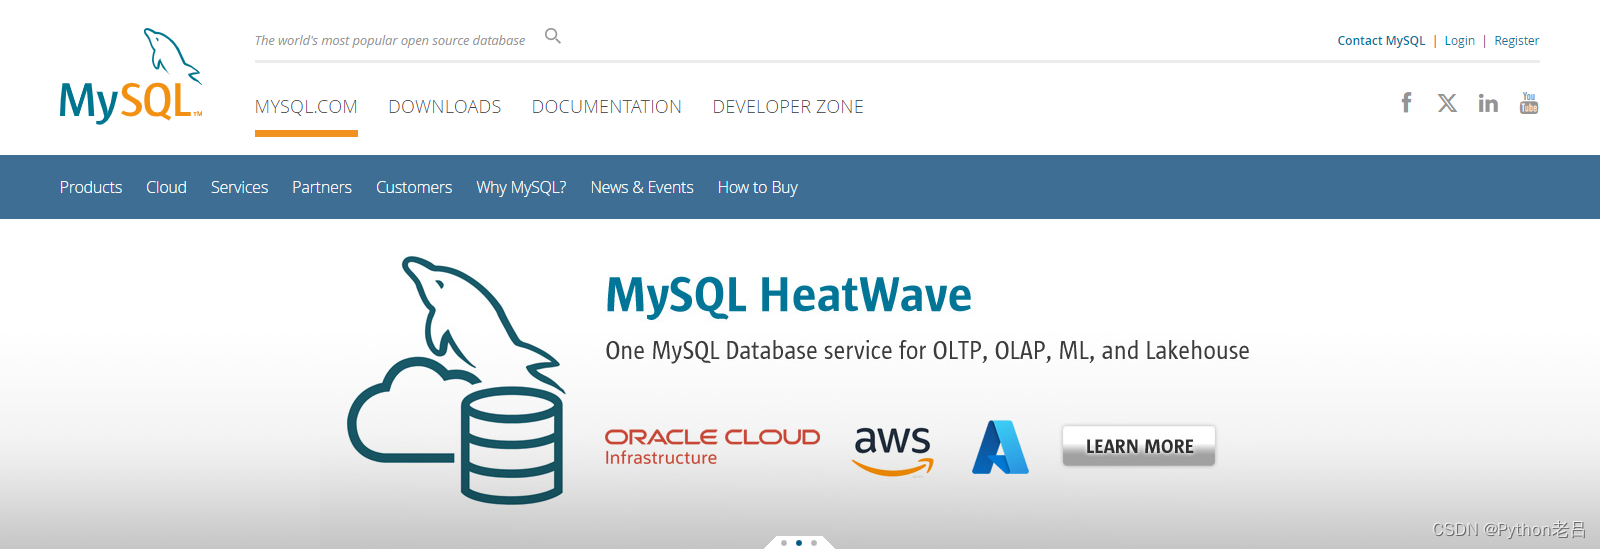 【2024年】MySQL安装配置教程 （超详细图文小白轻松上手Windows长期支持版本LTS数据库8.4.0下载5.7）